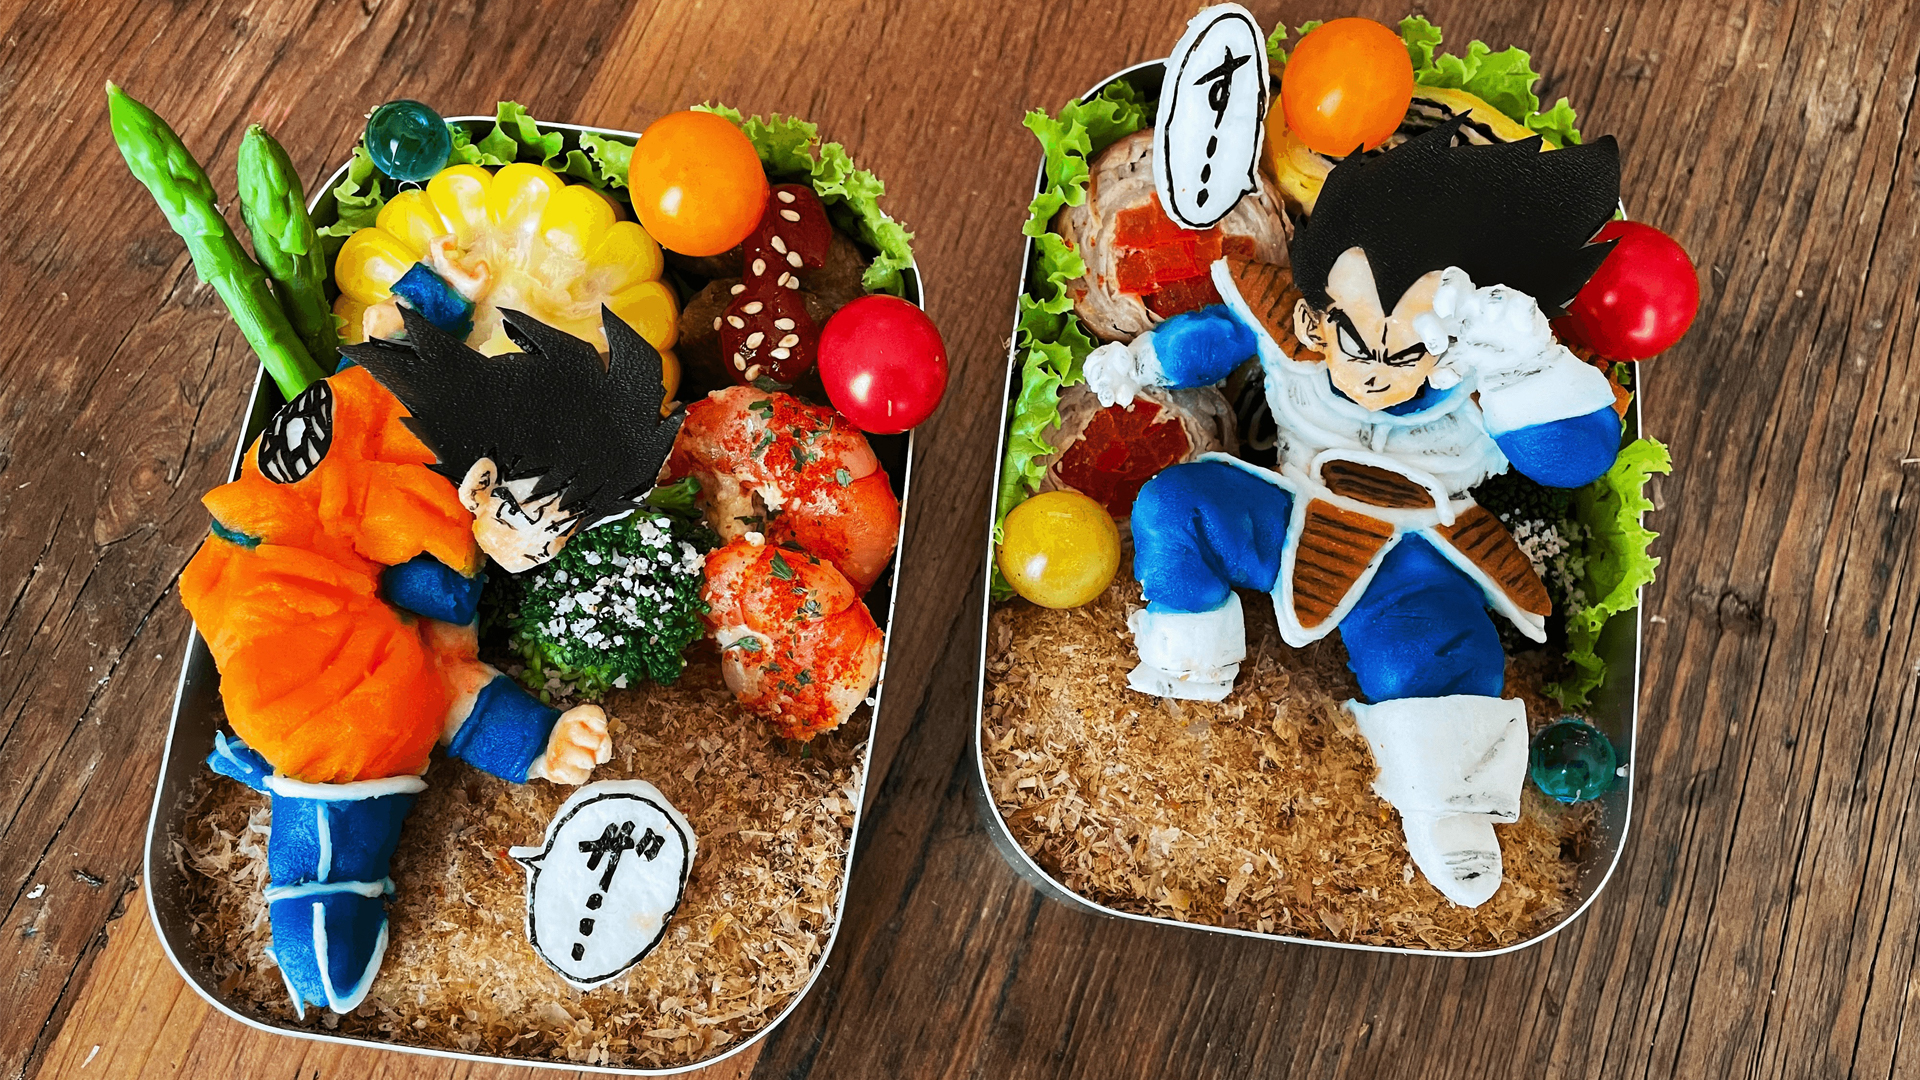 ドラゴンボール キャラ弁祭り あの名シーンを日本の食材で再現してみた 前篇 公式 ドラゴンボールオフィシャルサイト